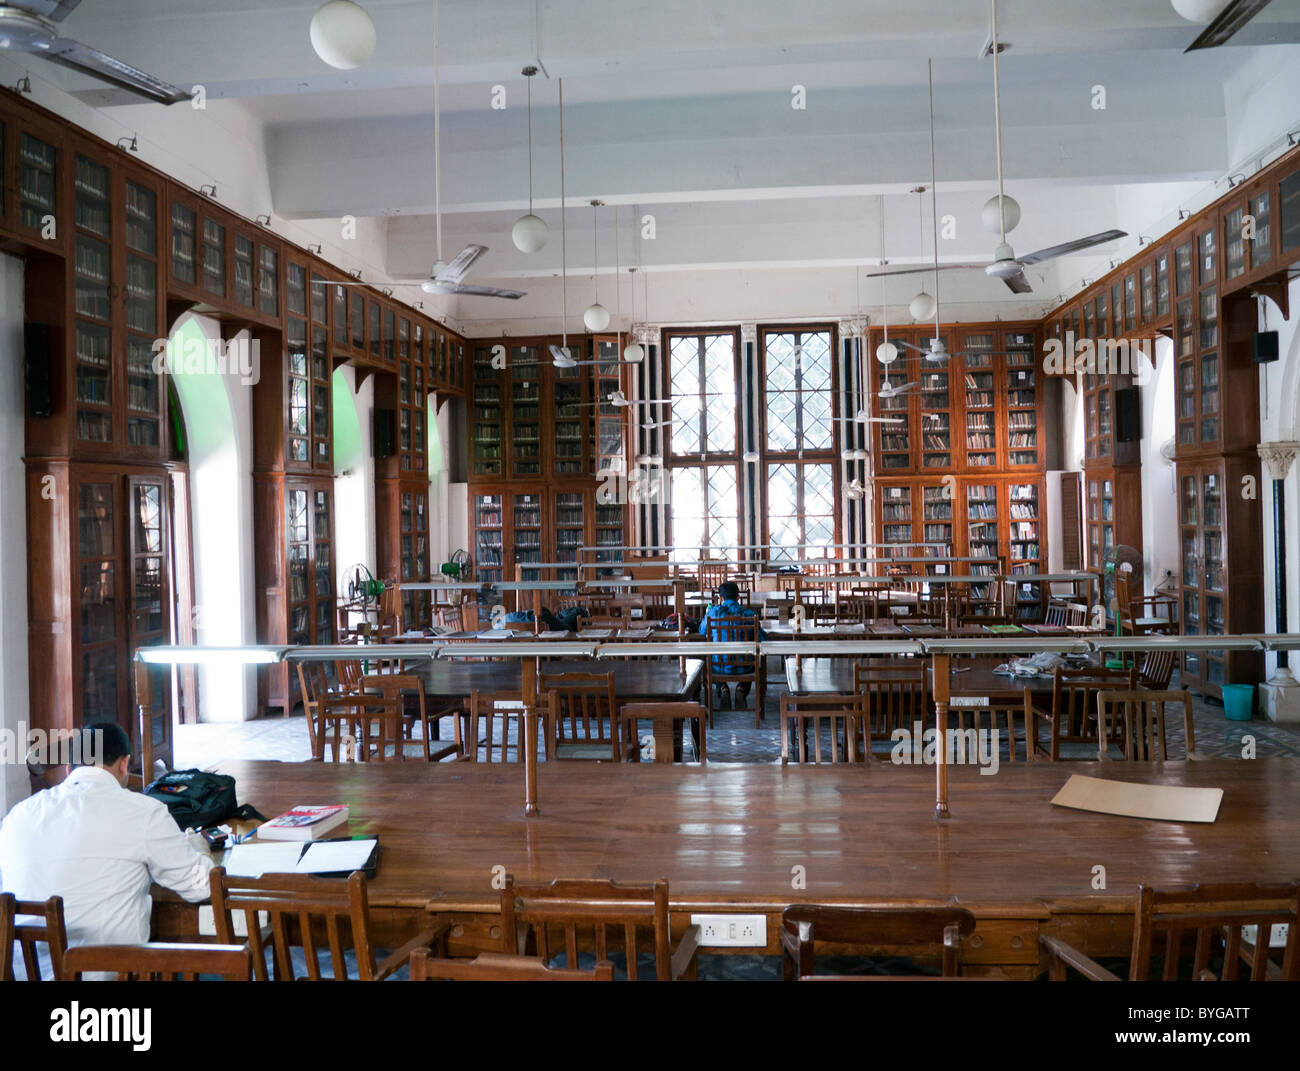 The David Sassoon library and reading room in Mumbai India Stock Photo